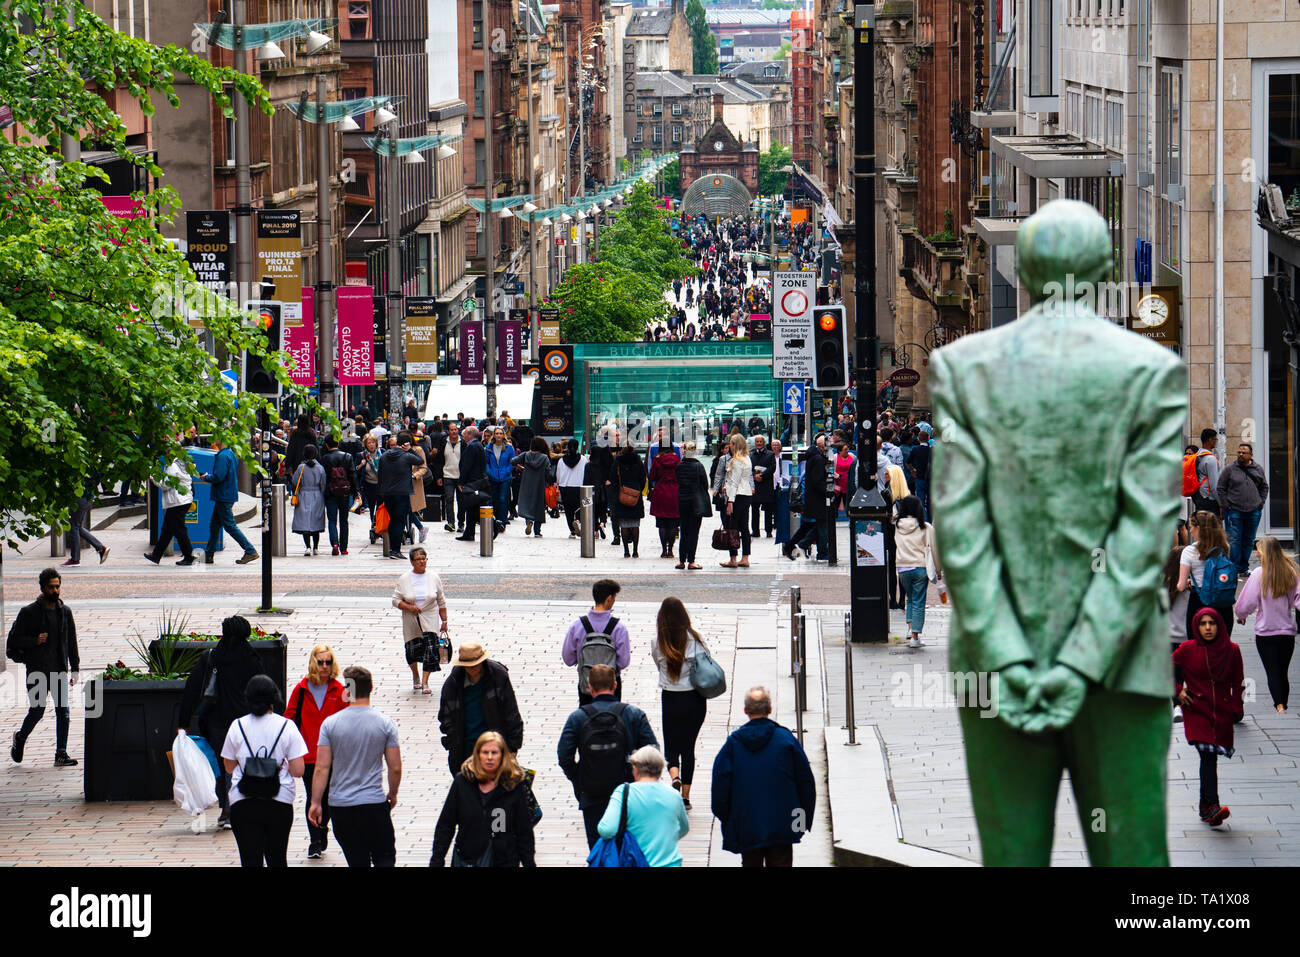 Avis de shoppers et statue de Donald Dewar sur Buchanan Street la principale rue commerçante piétonne à Glasgow, Écosse, Royaume-Uni Banque D'Images